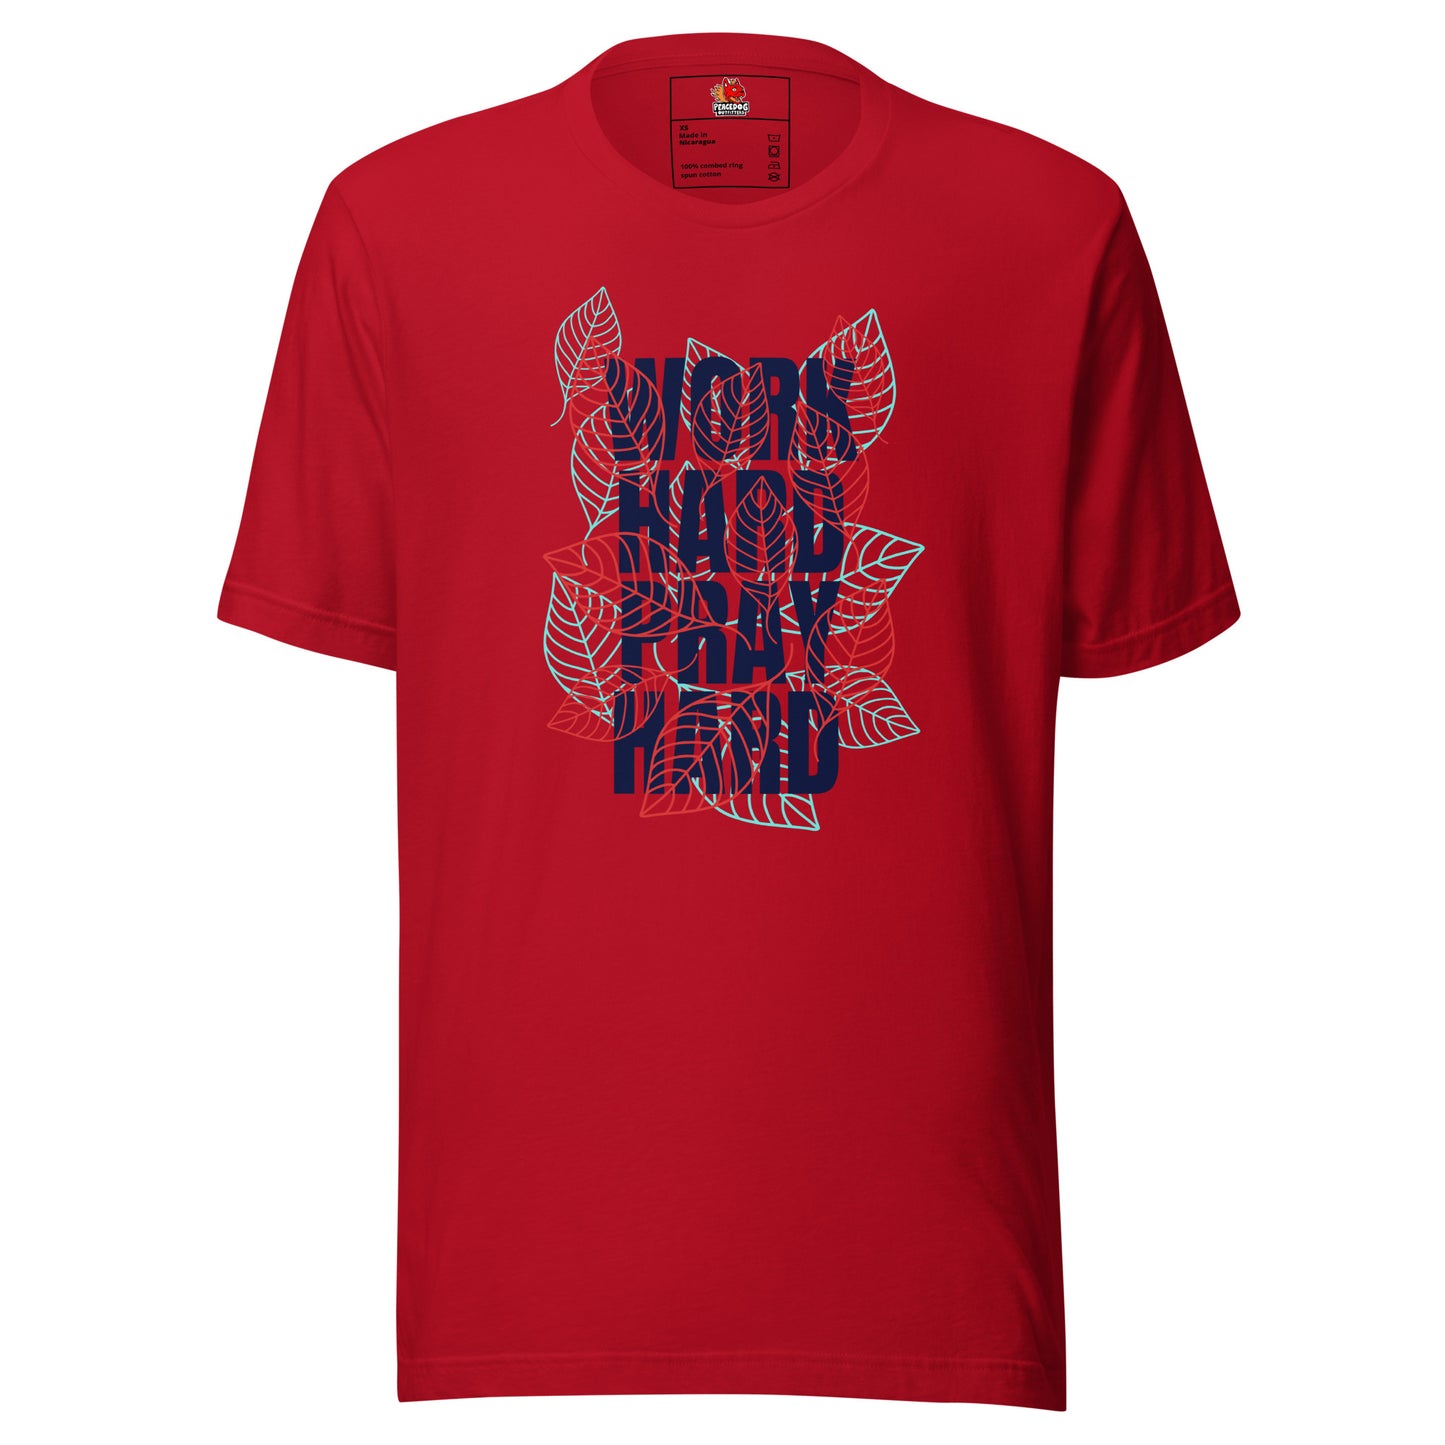 Work Hard, Pray Hard T-shirt